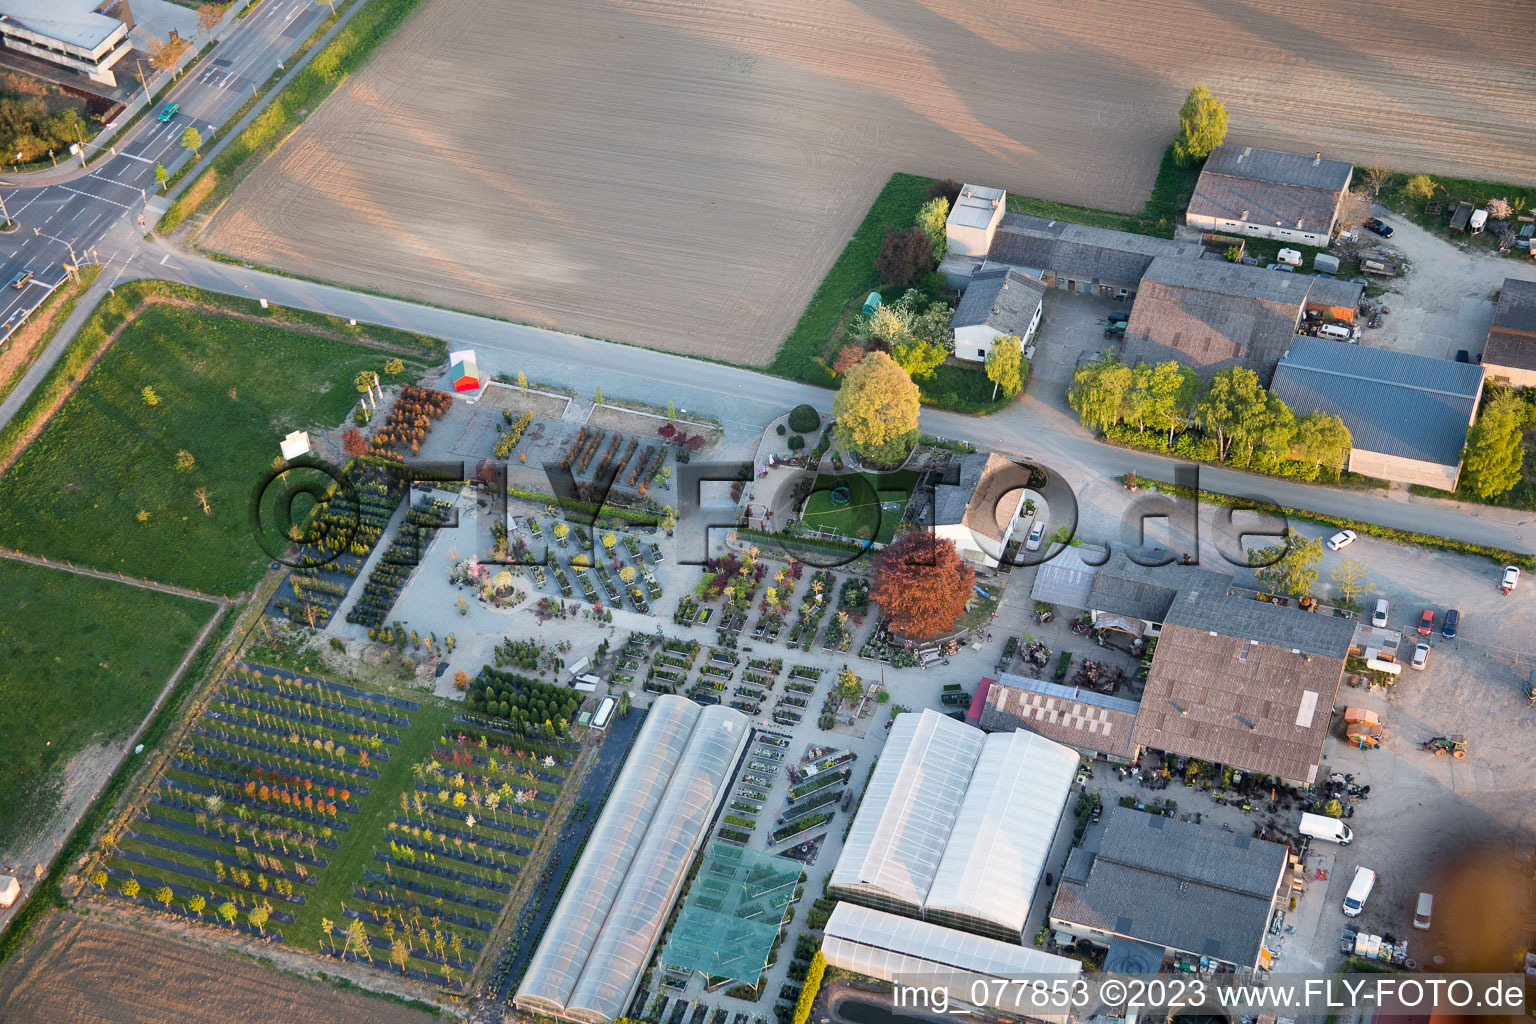 Auerbach im Bundesland Hessen, Deutschland aus der Drohnenperspektive